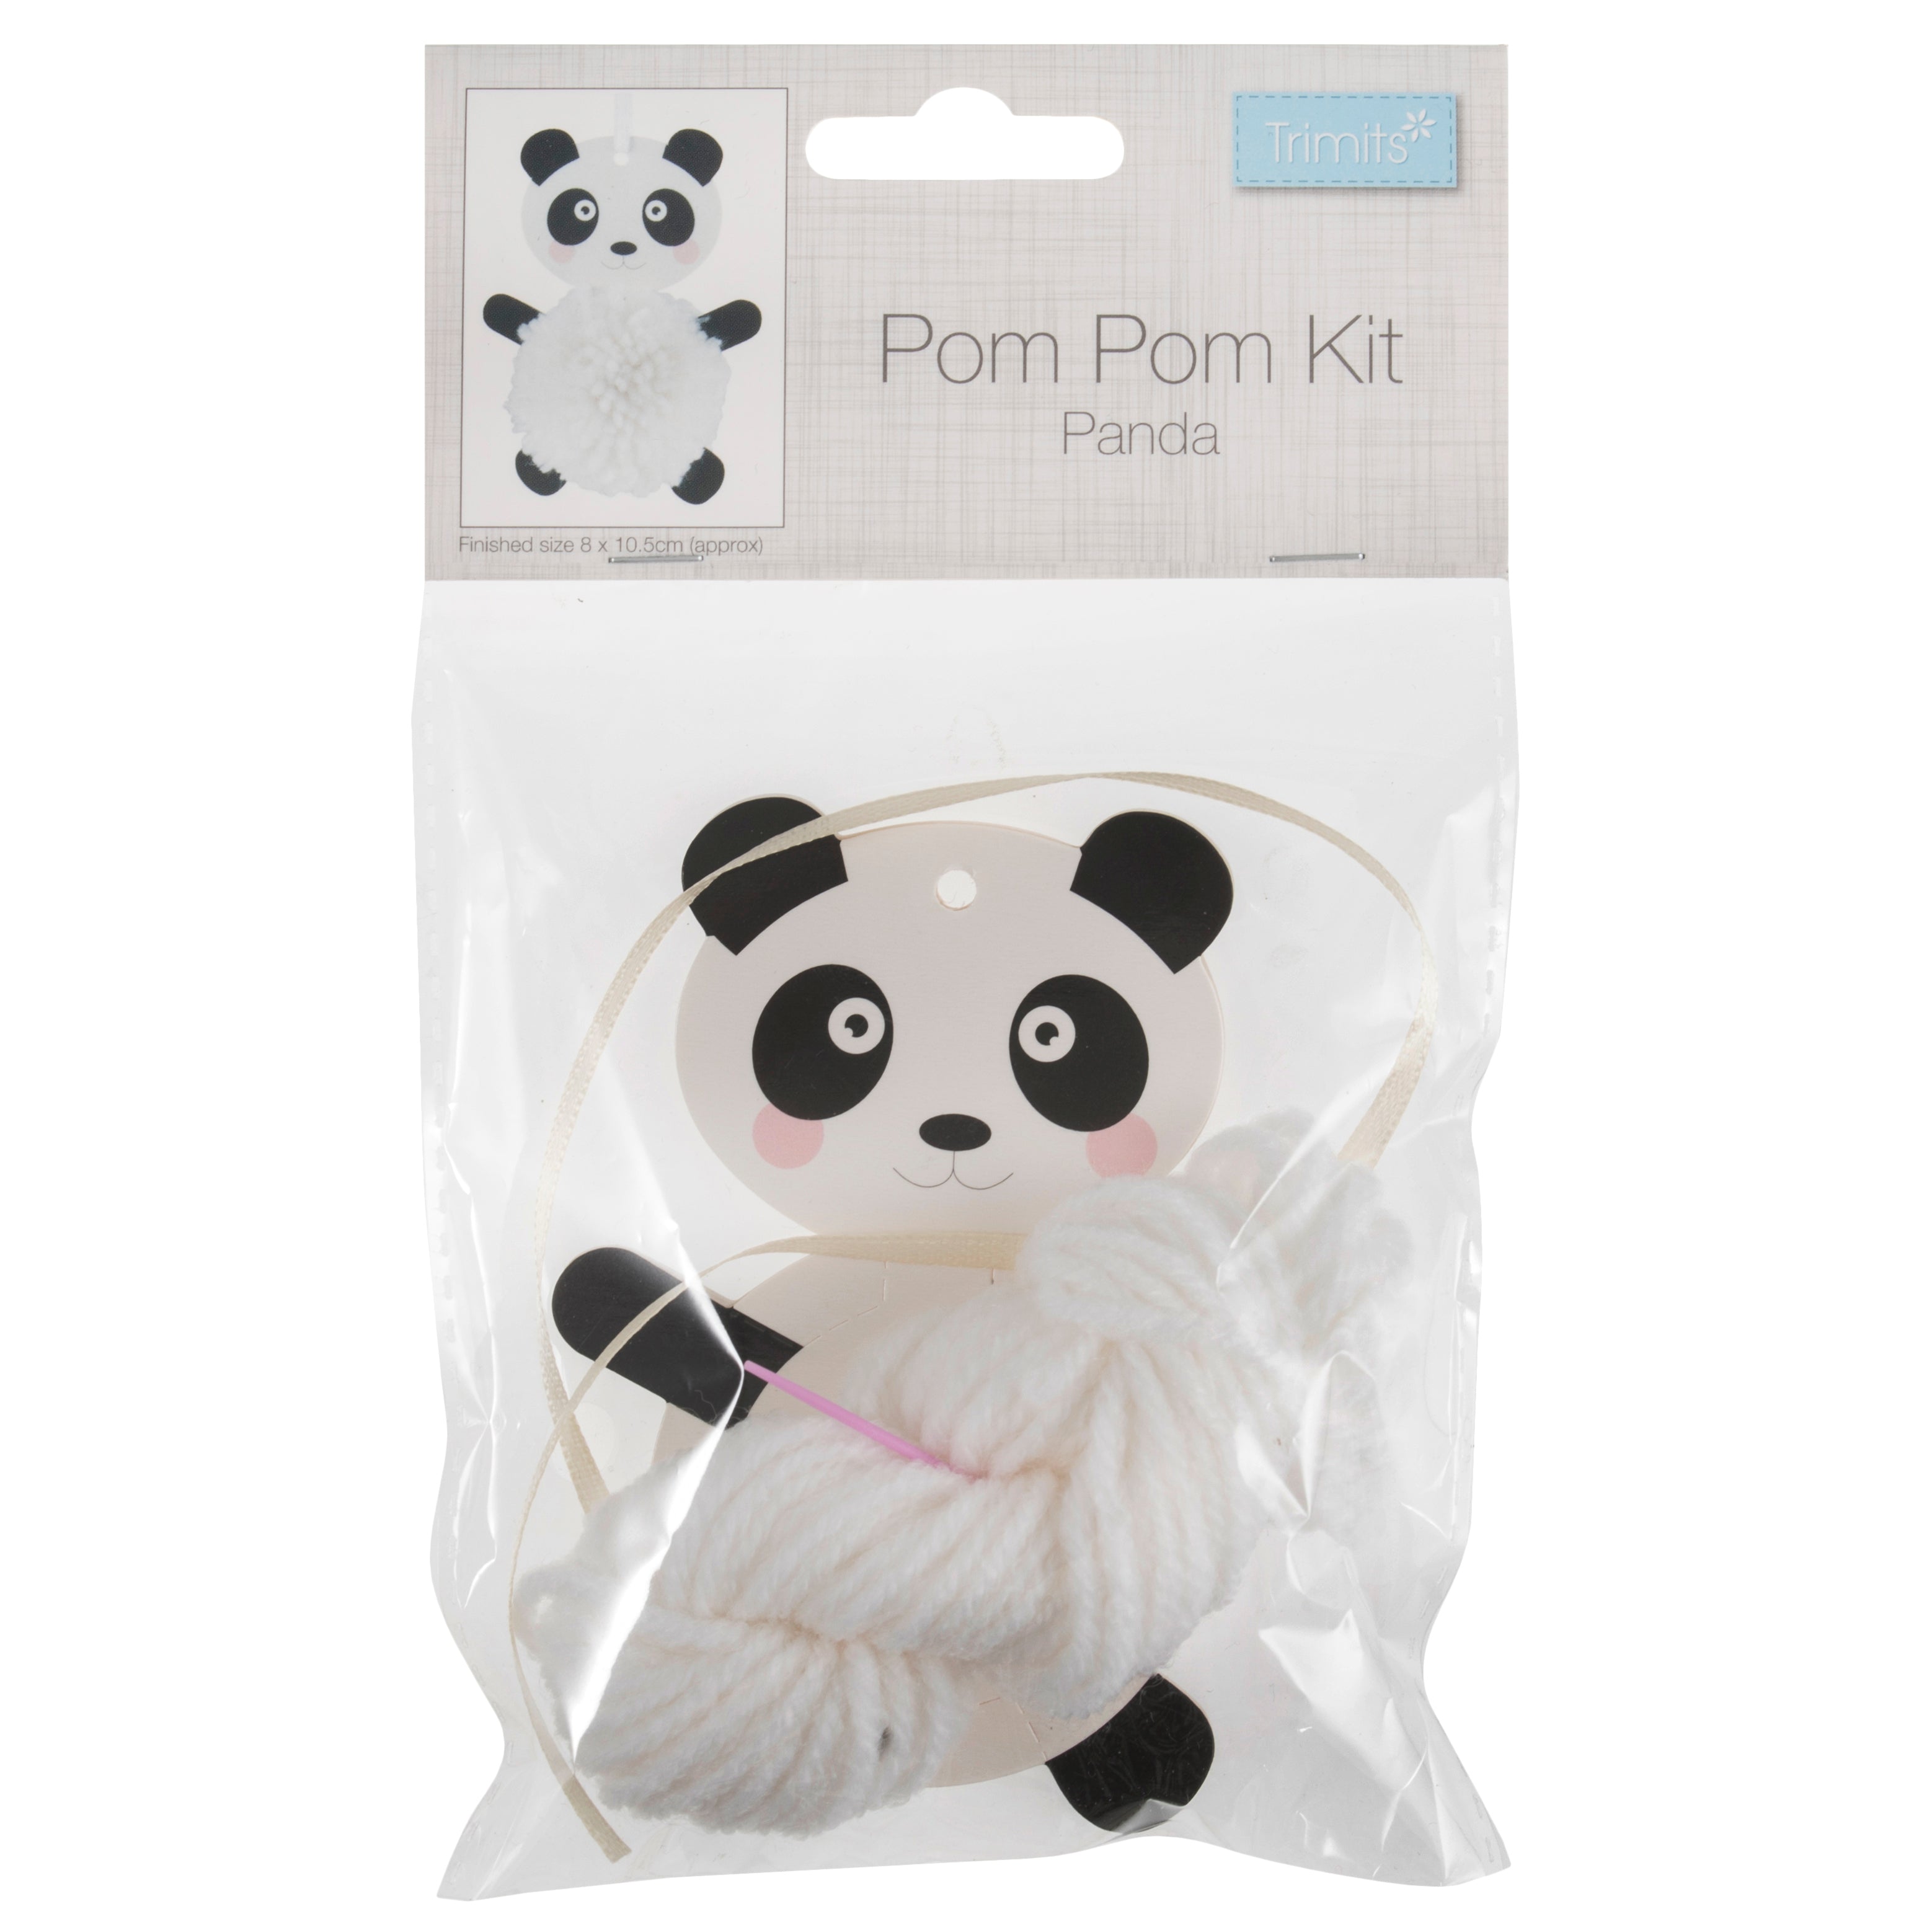 Pom Pom Kit Panda